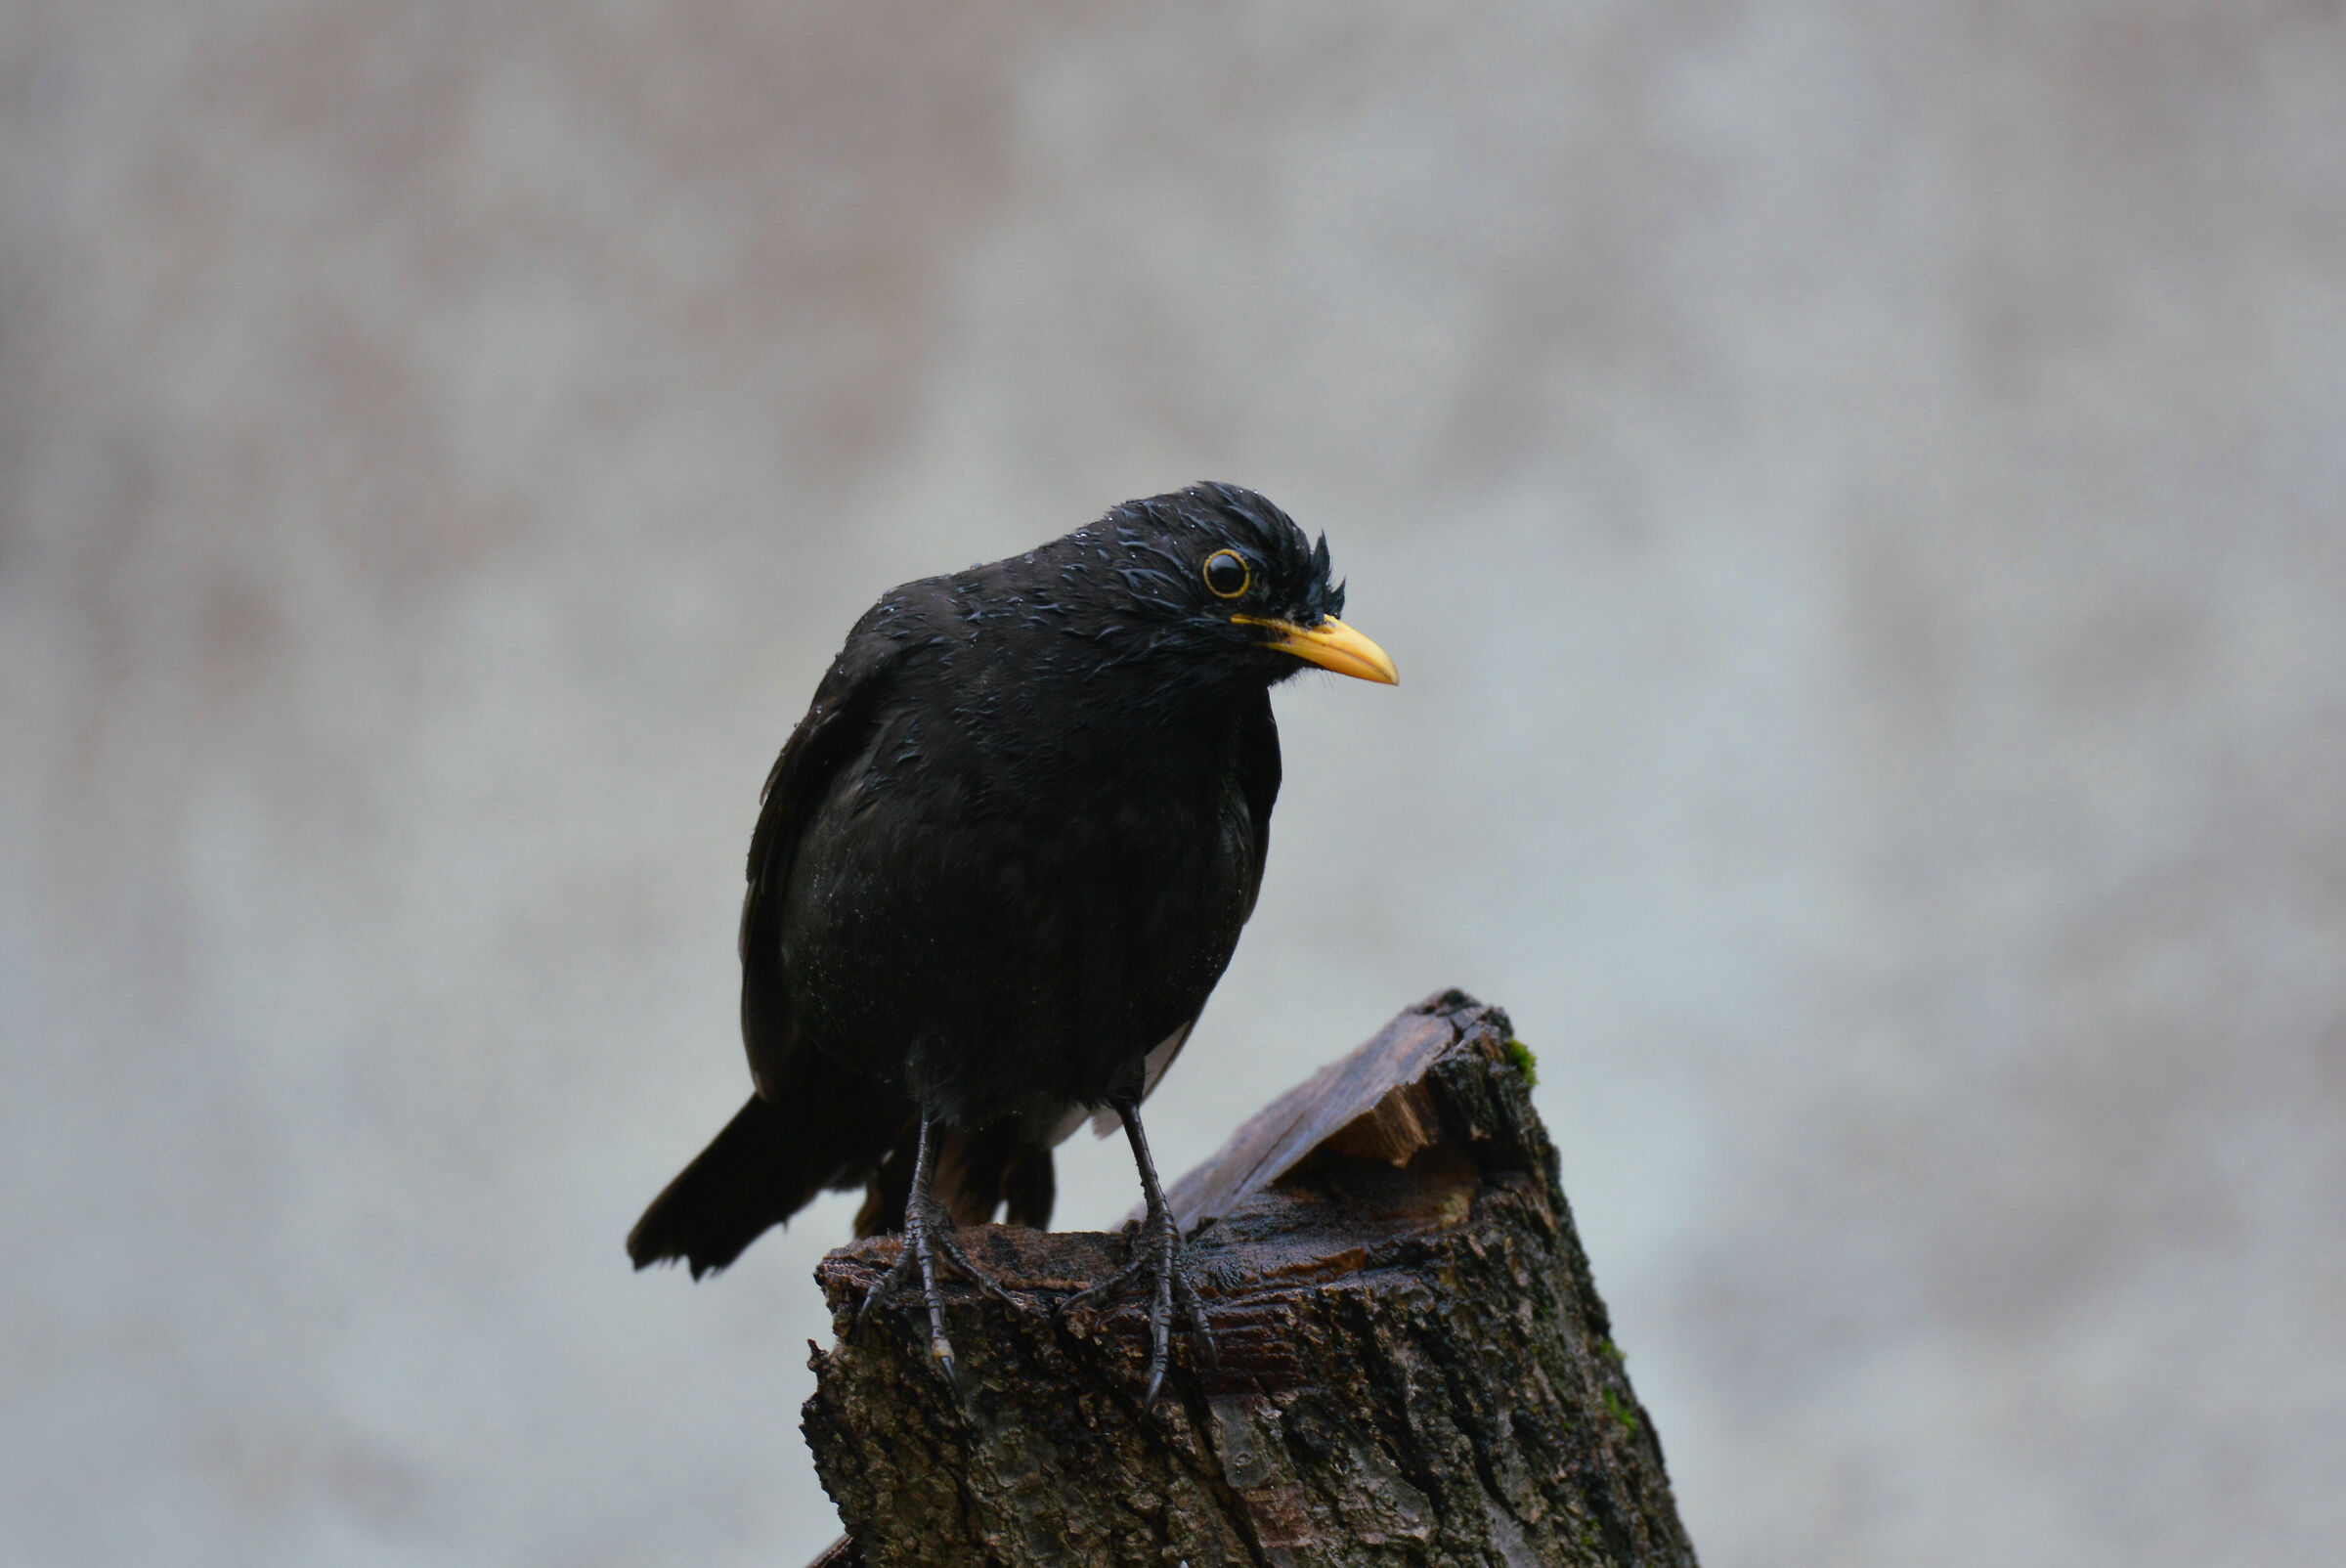 Blackbird wet by spring rain...